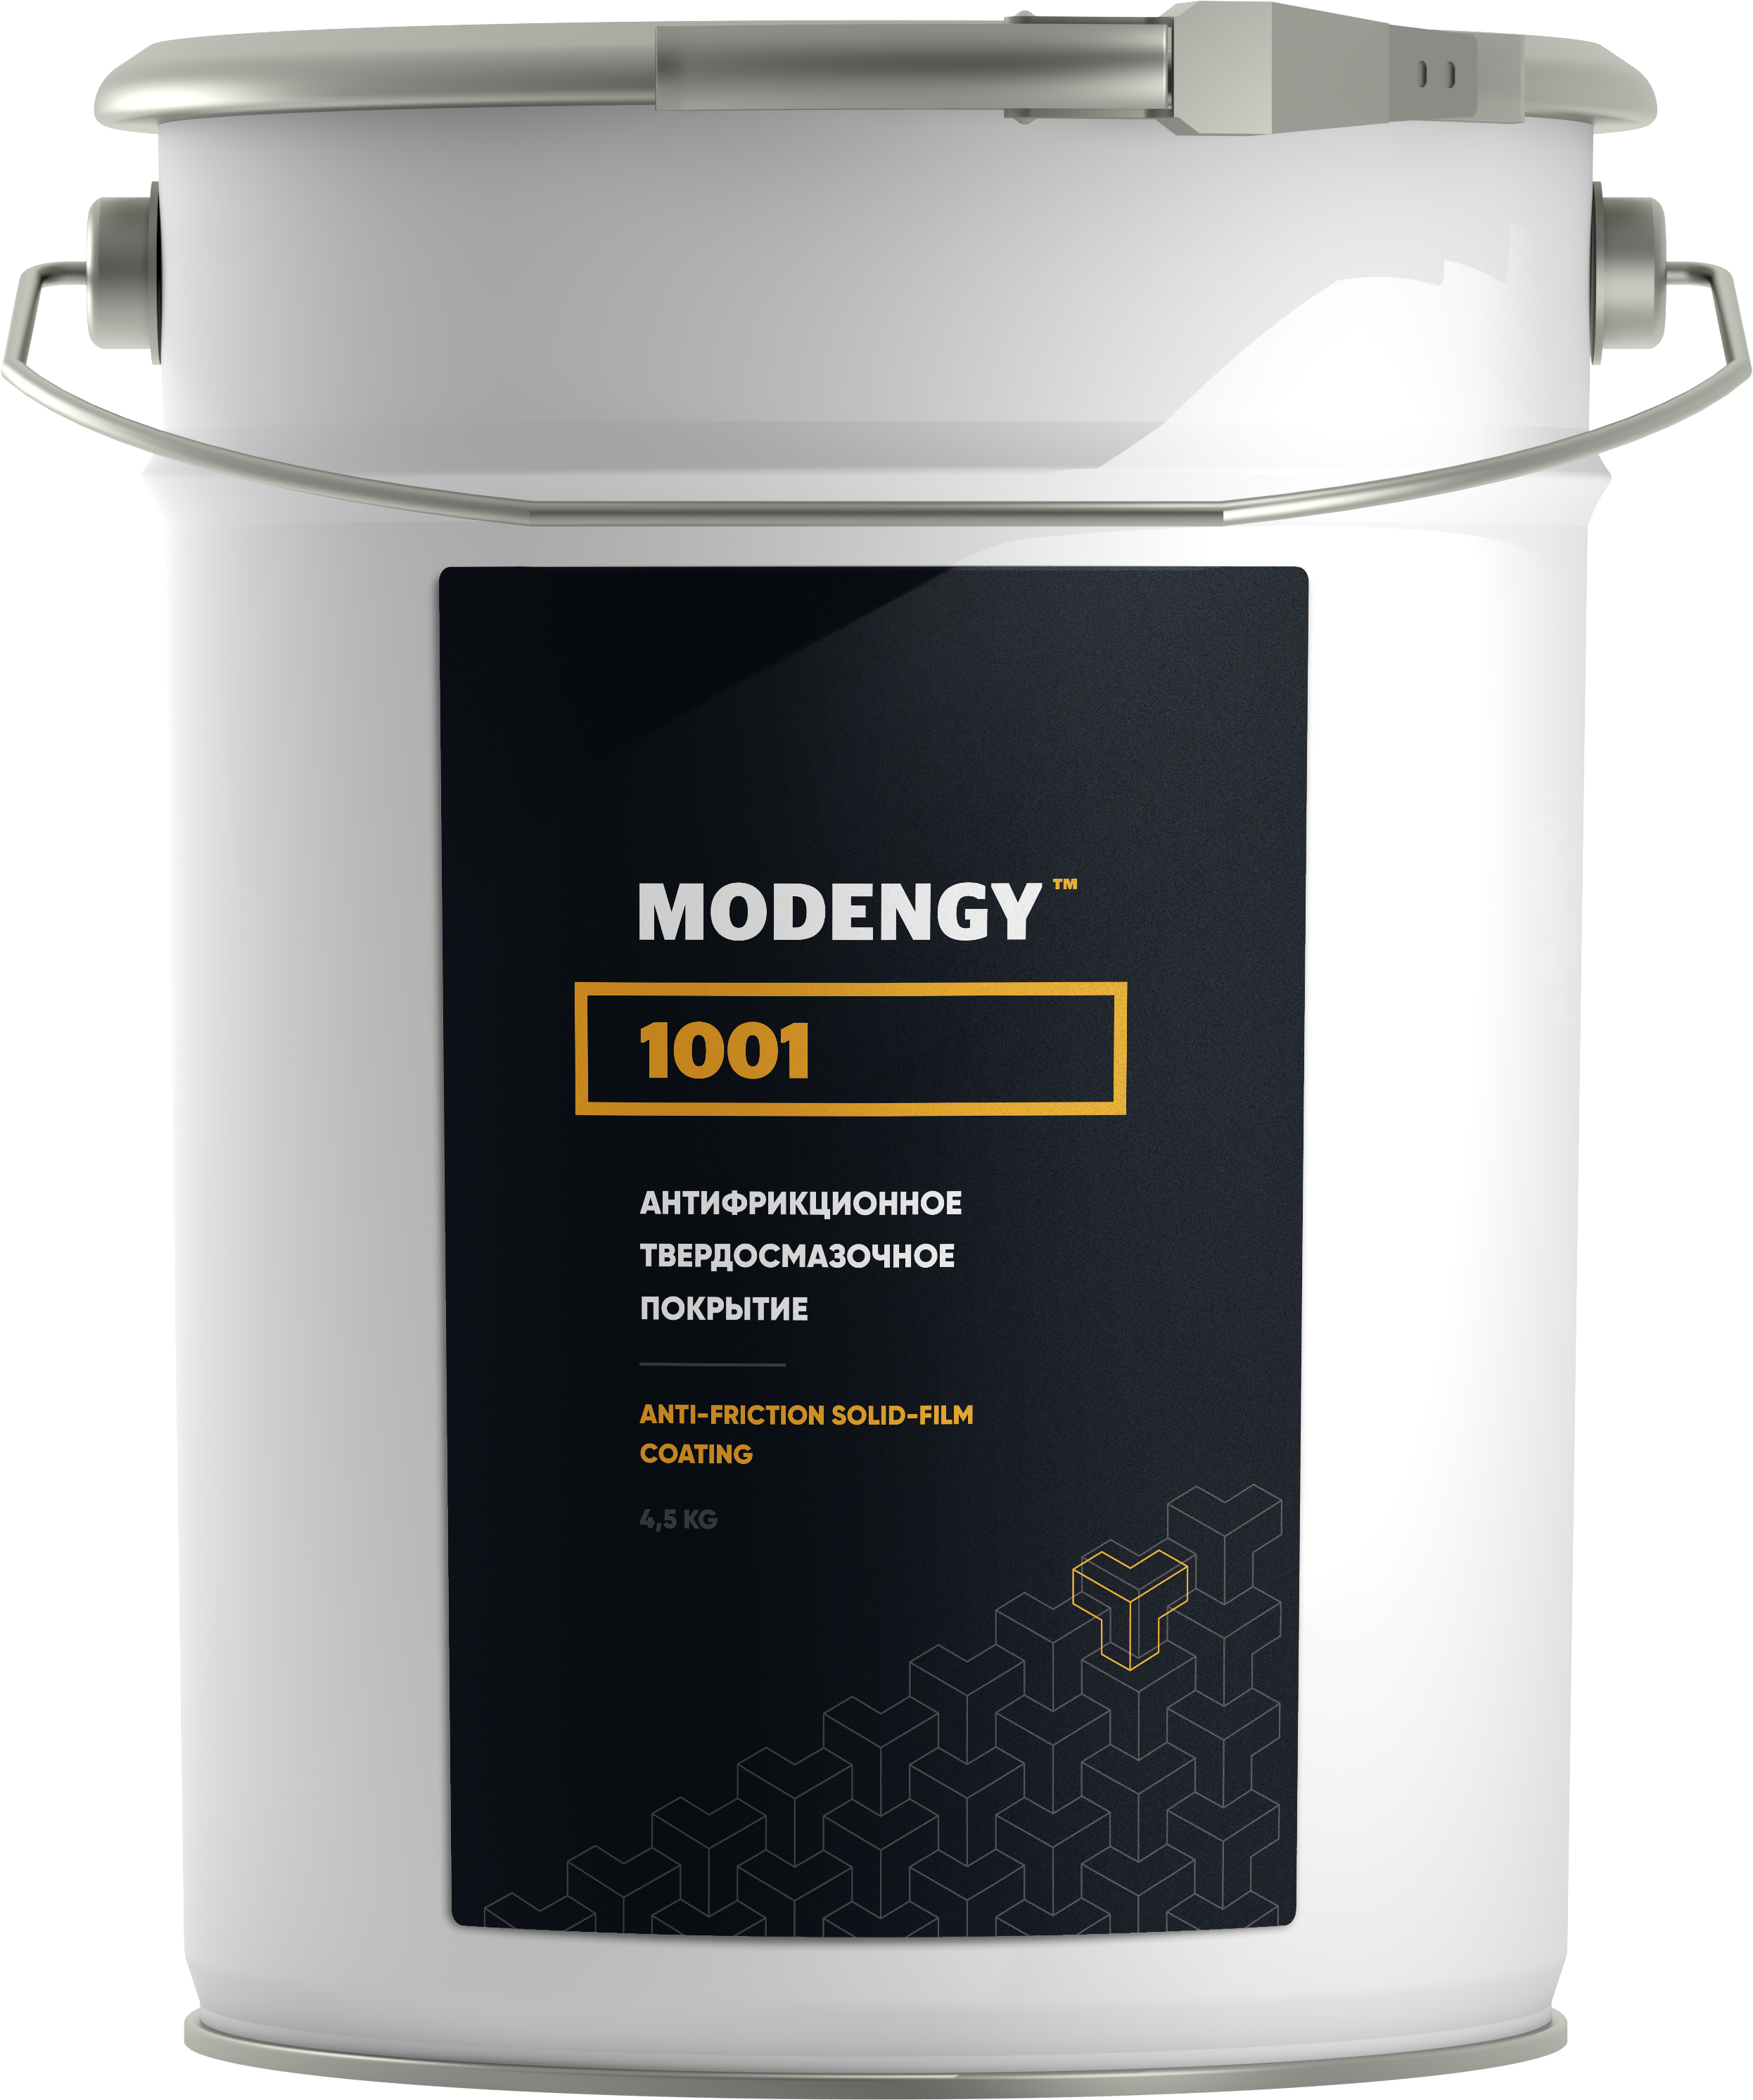 Антифрикционное твердосмазочное покрытие MODENGY 1001 (4,5 кг)